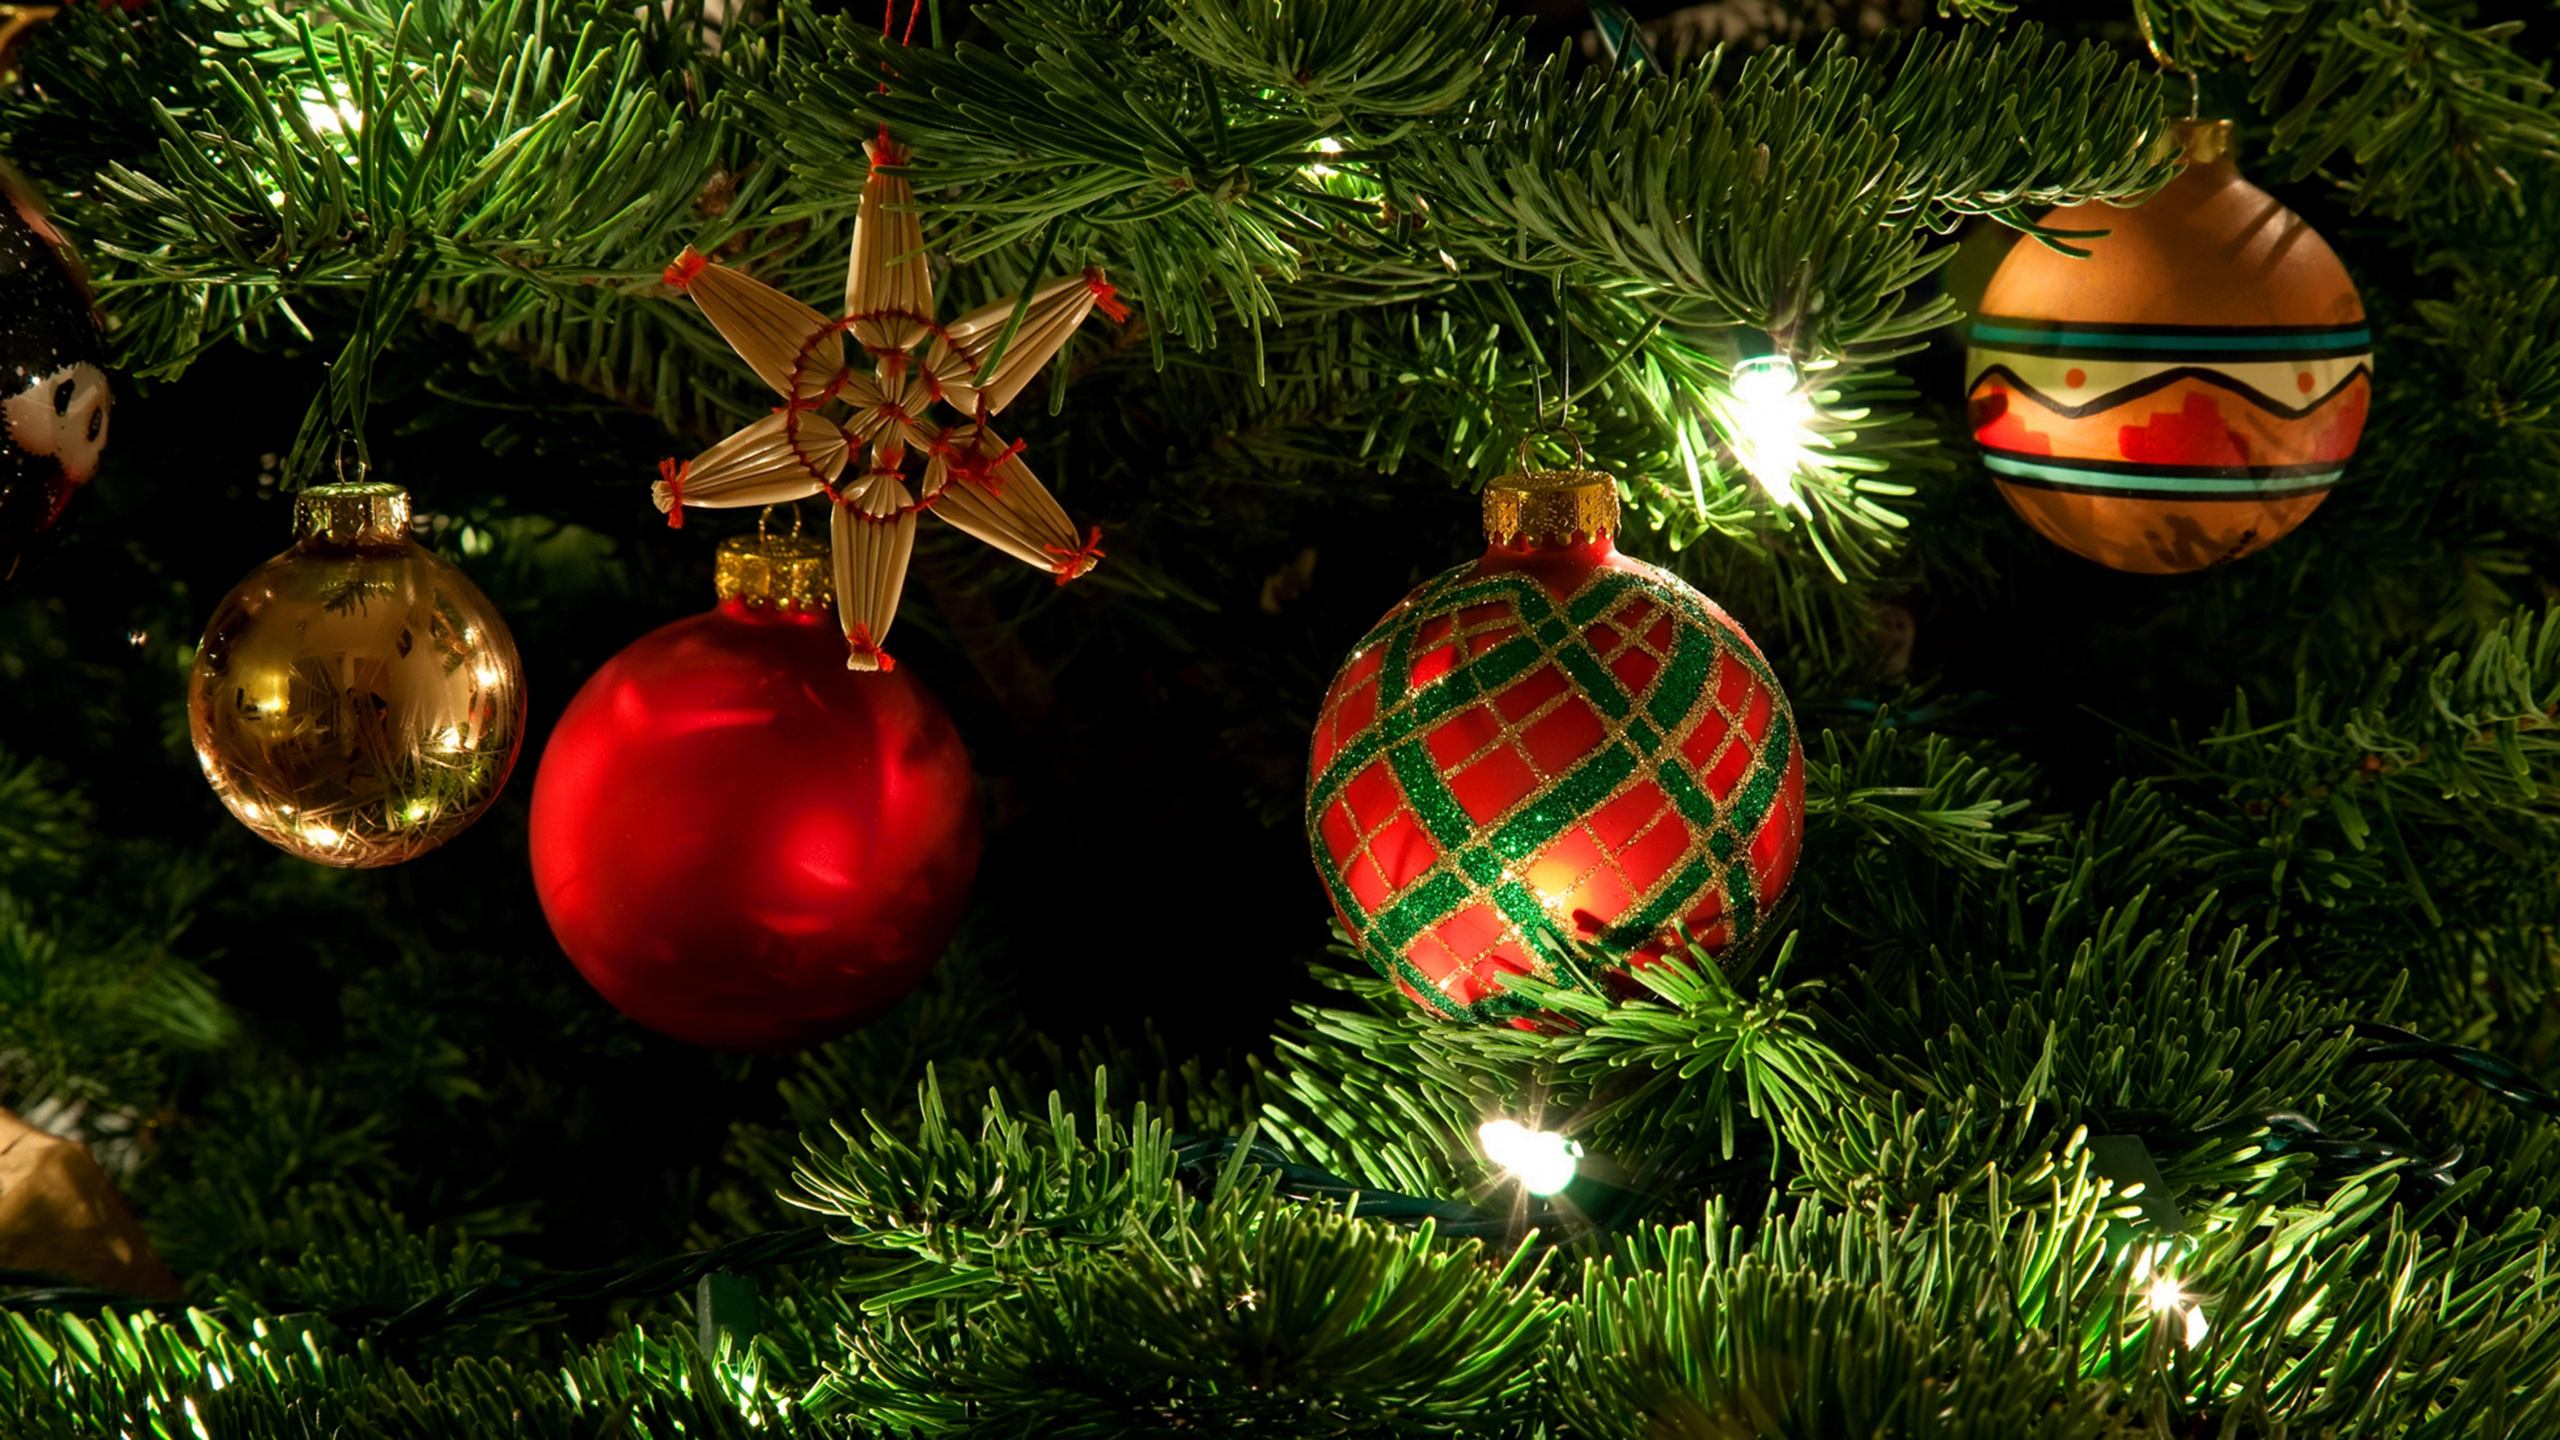 圣诞节那天, 圣诞节的装饰品, 圣诞节, 圣诞装饰, 圣诞树 壁纸 2560x1440 允许